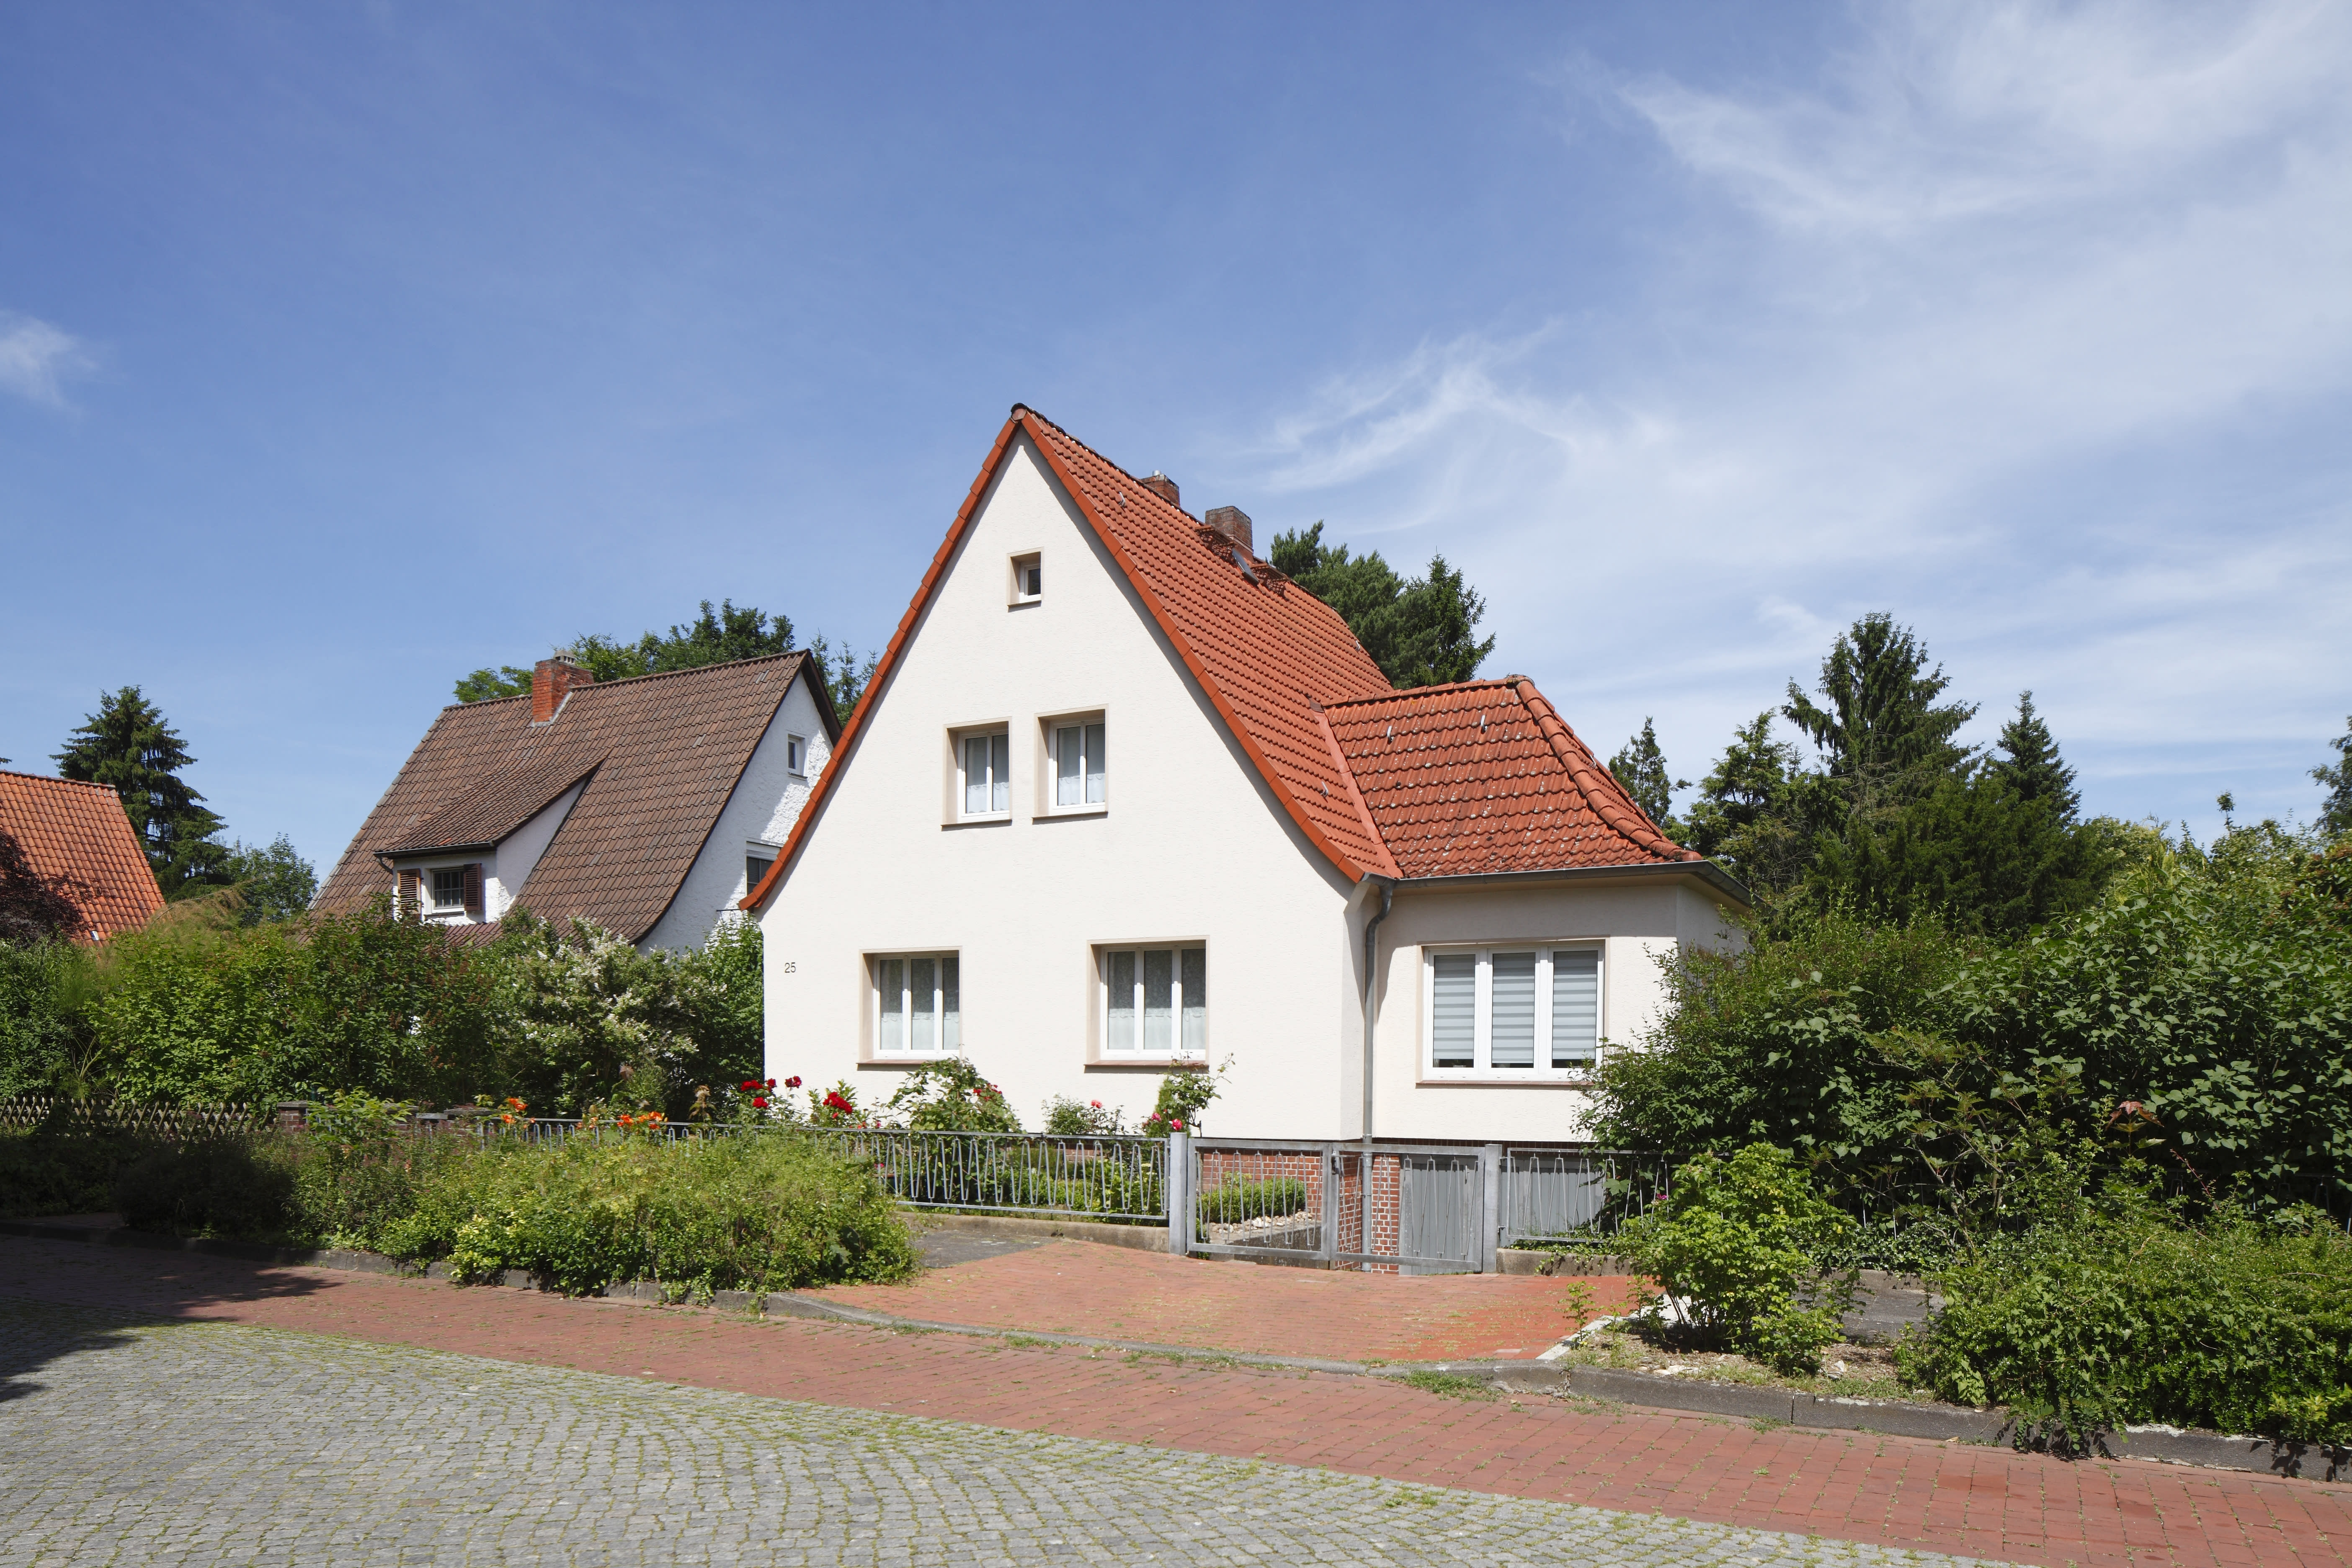 zweigeschossiges Einfamilienhaus in Siedlung von der Straße aus gesehen